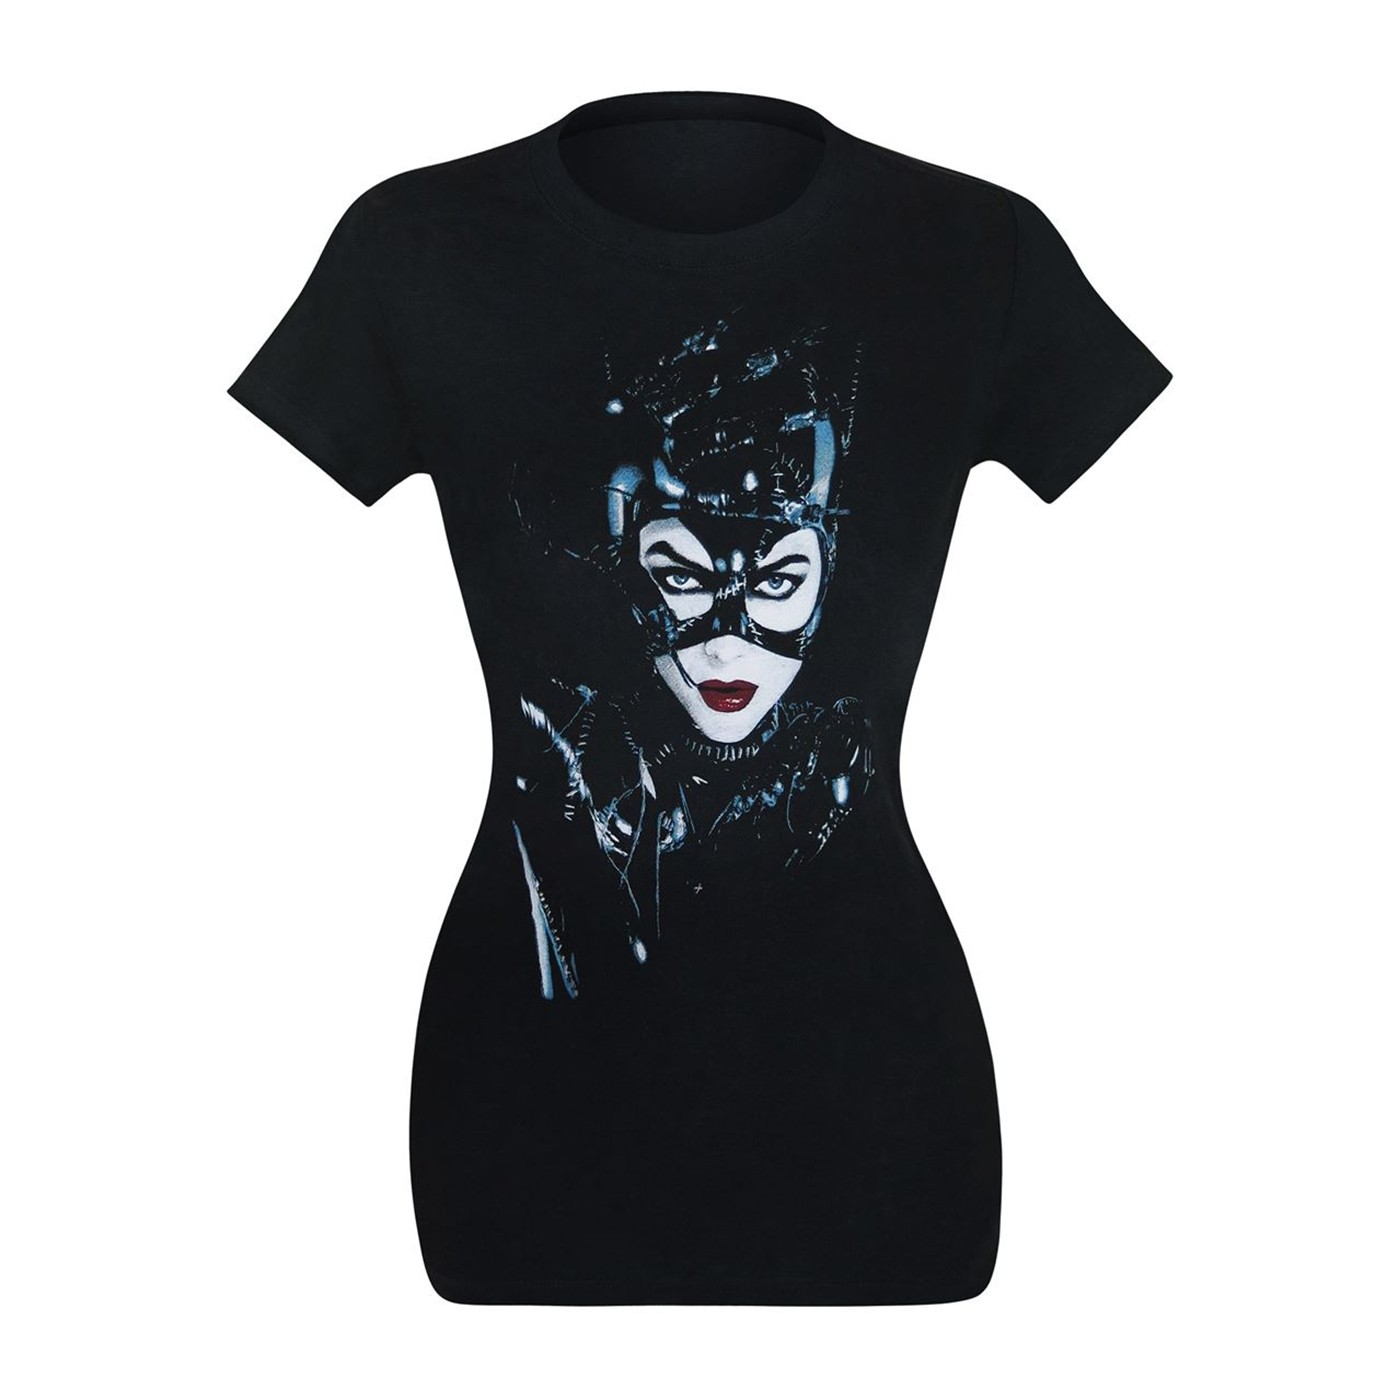 Catwoman Batman Returns Women's T-Shirt